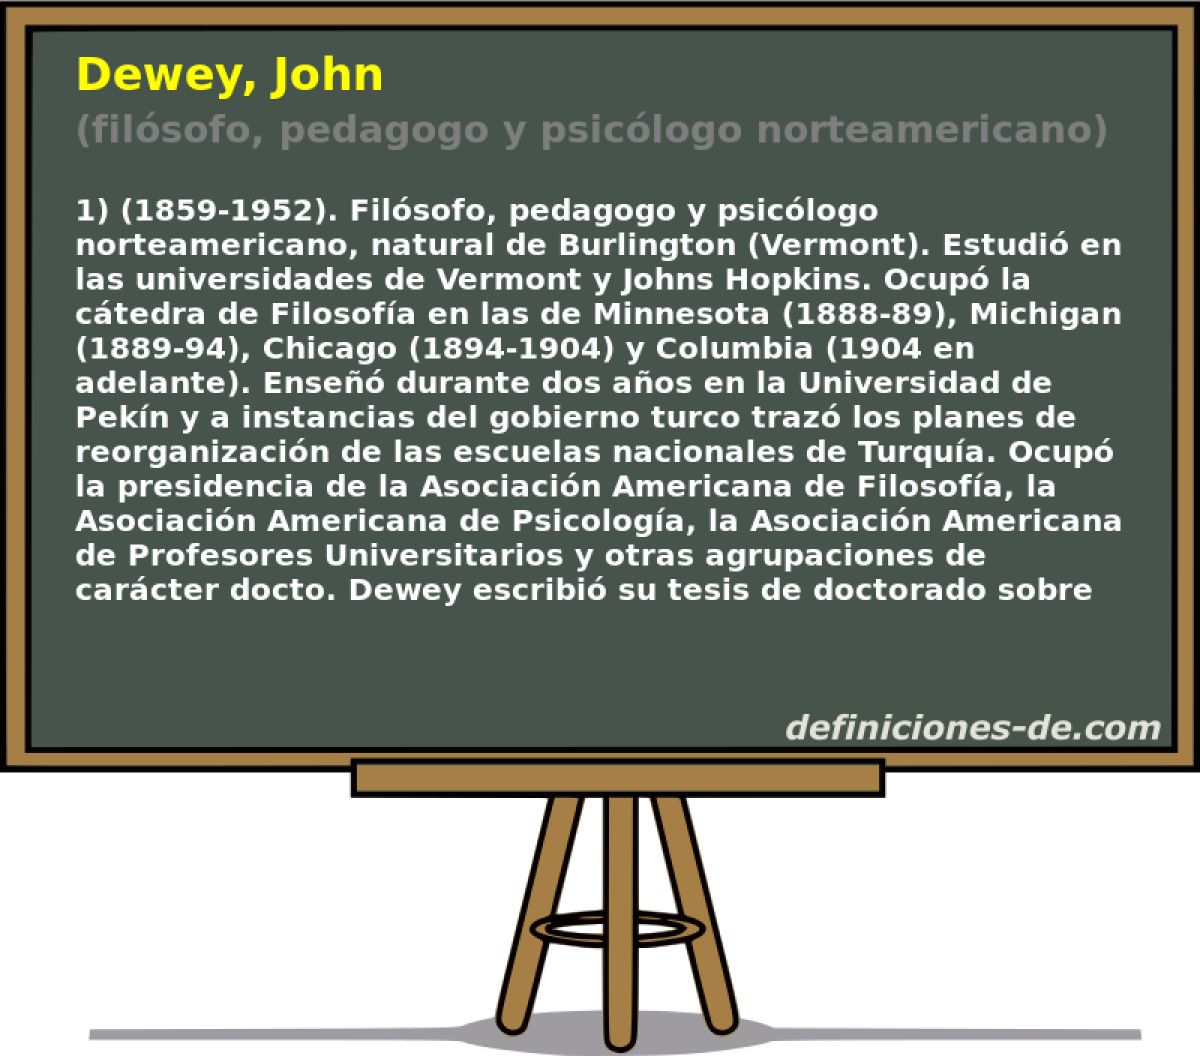 Dewey, John (filsofo, pedagogo y psiclogo norteamericano)